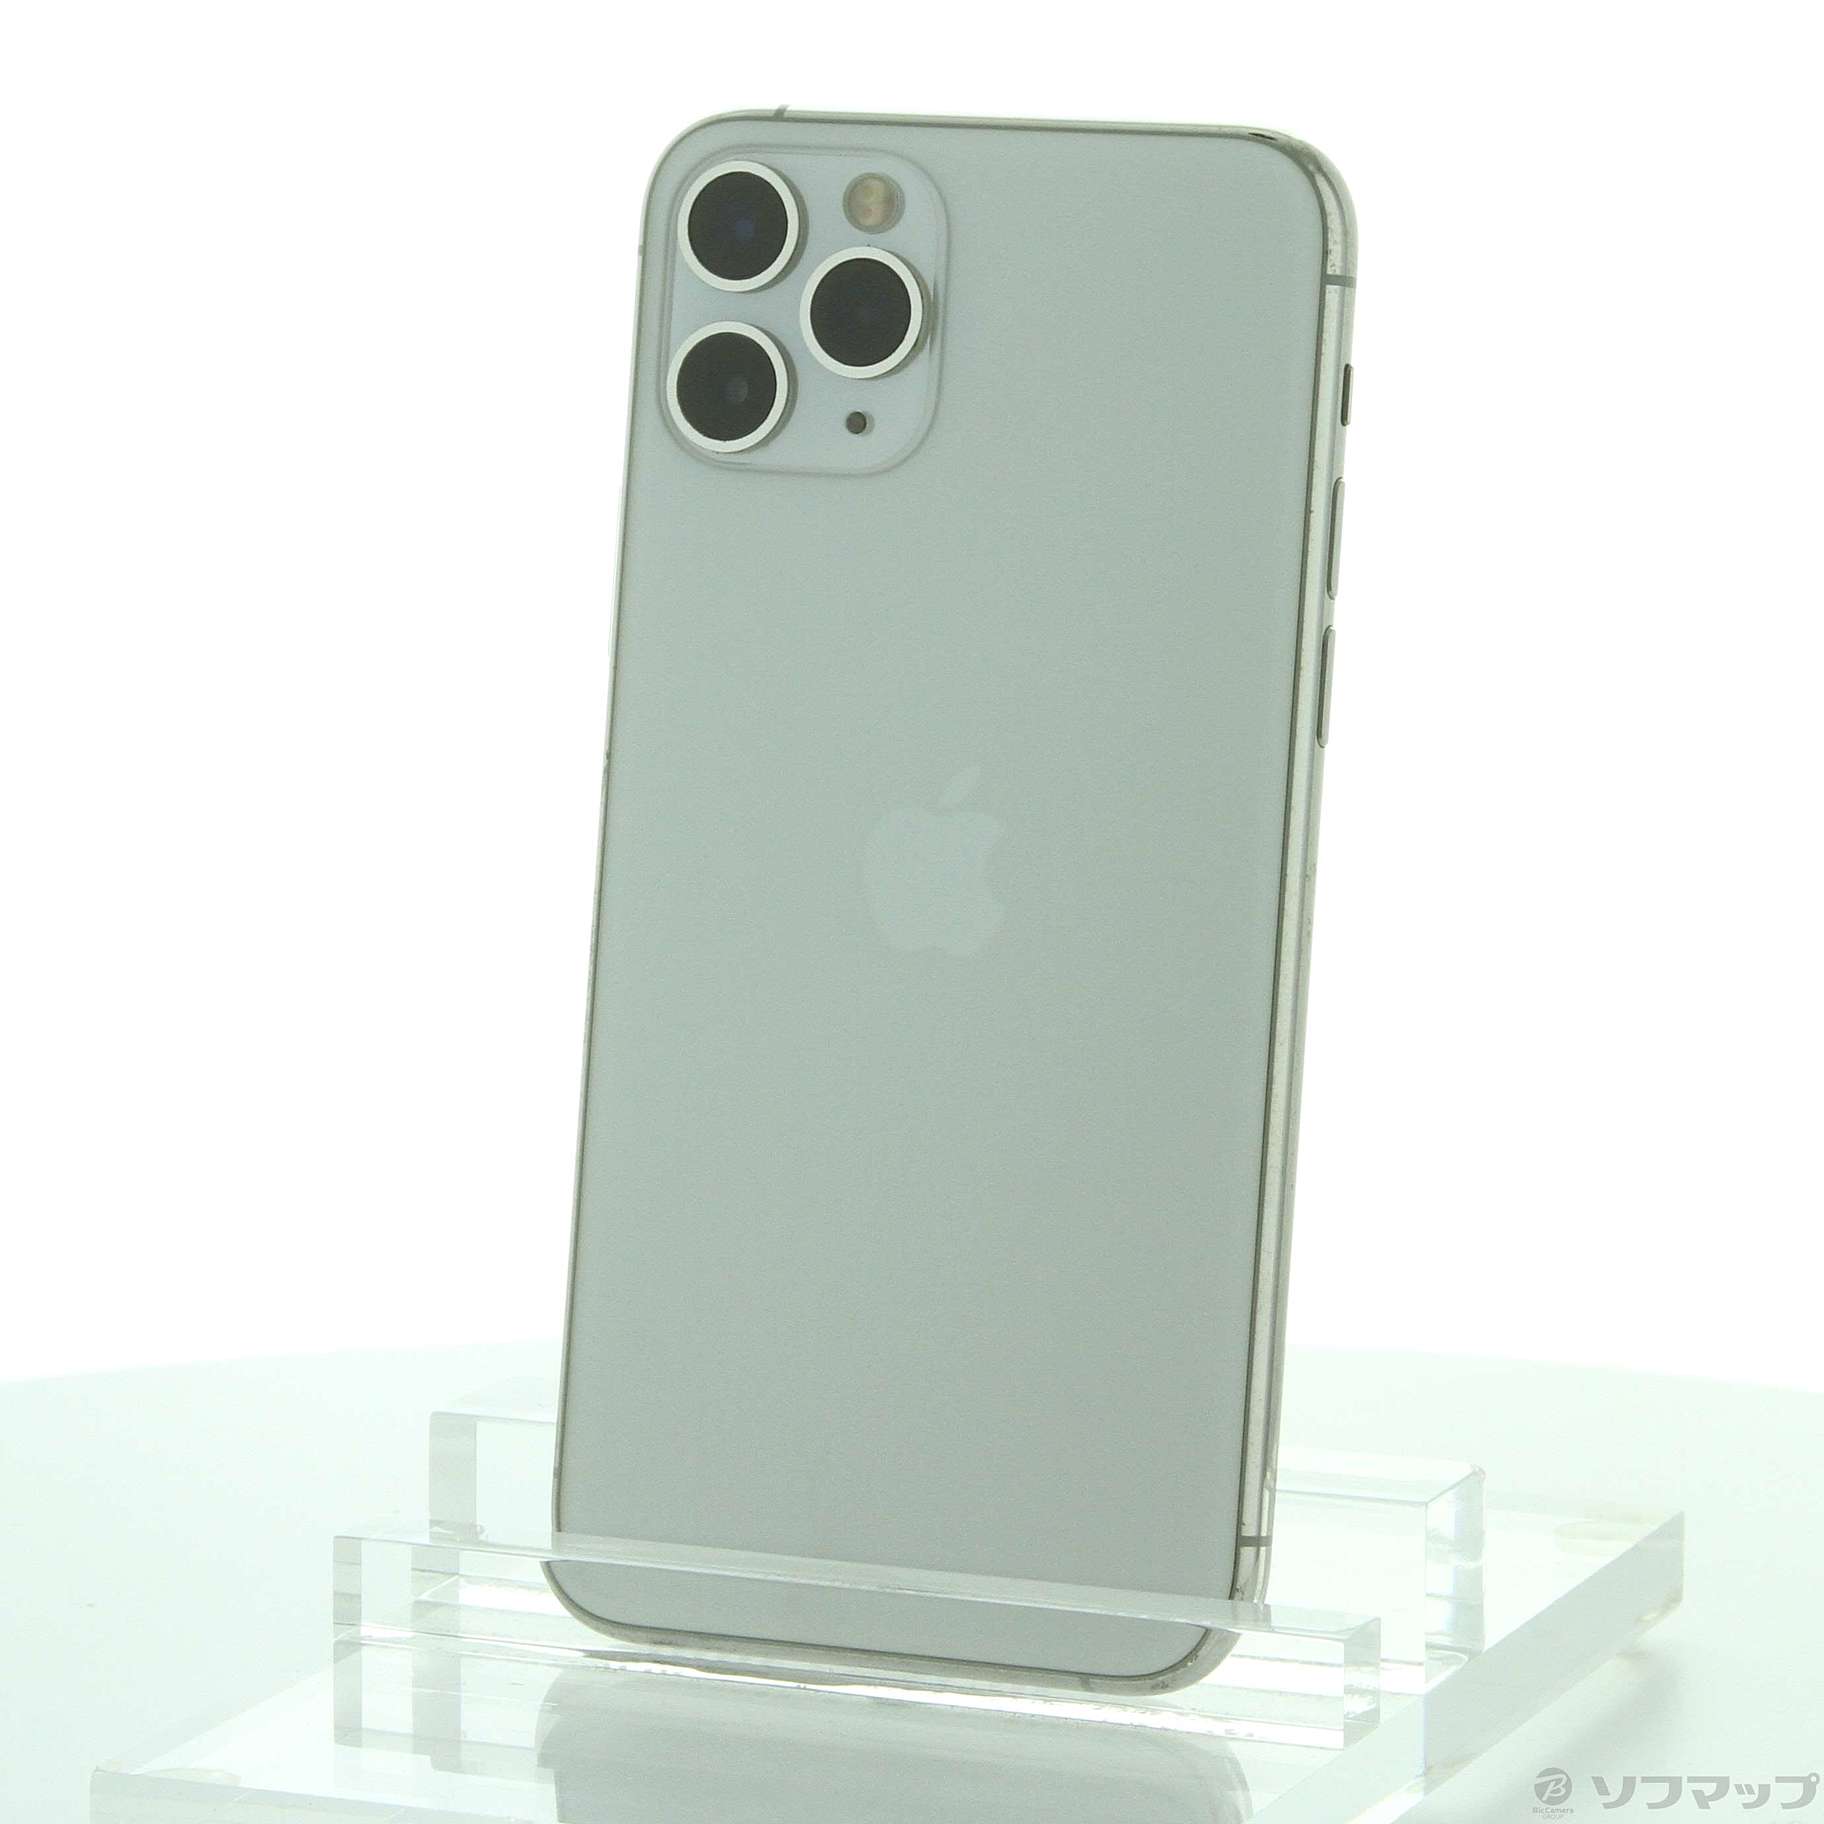 【シャッター音無し】iPhone11 Pro 64GB シルバー 【香港版】